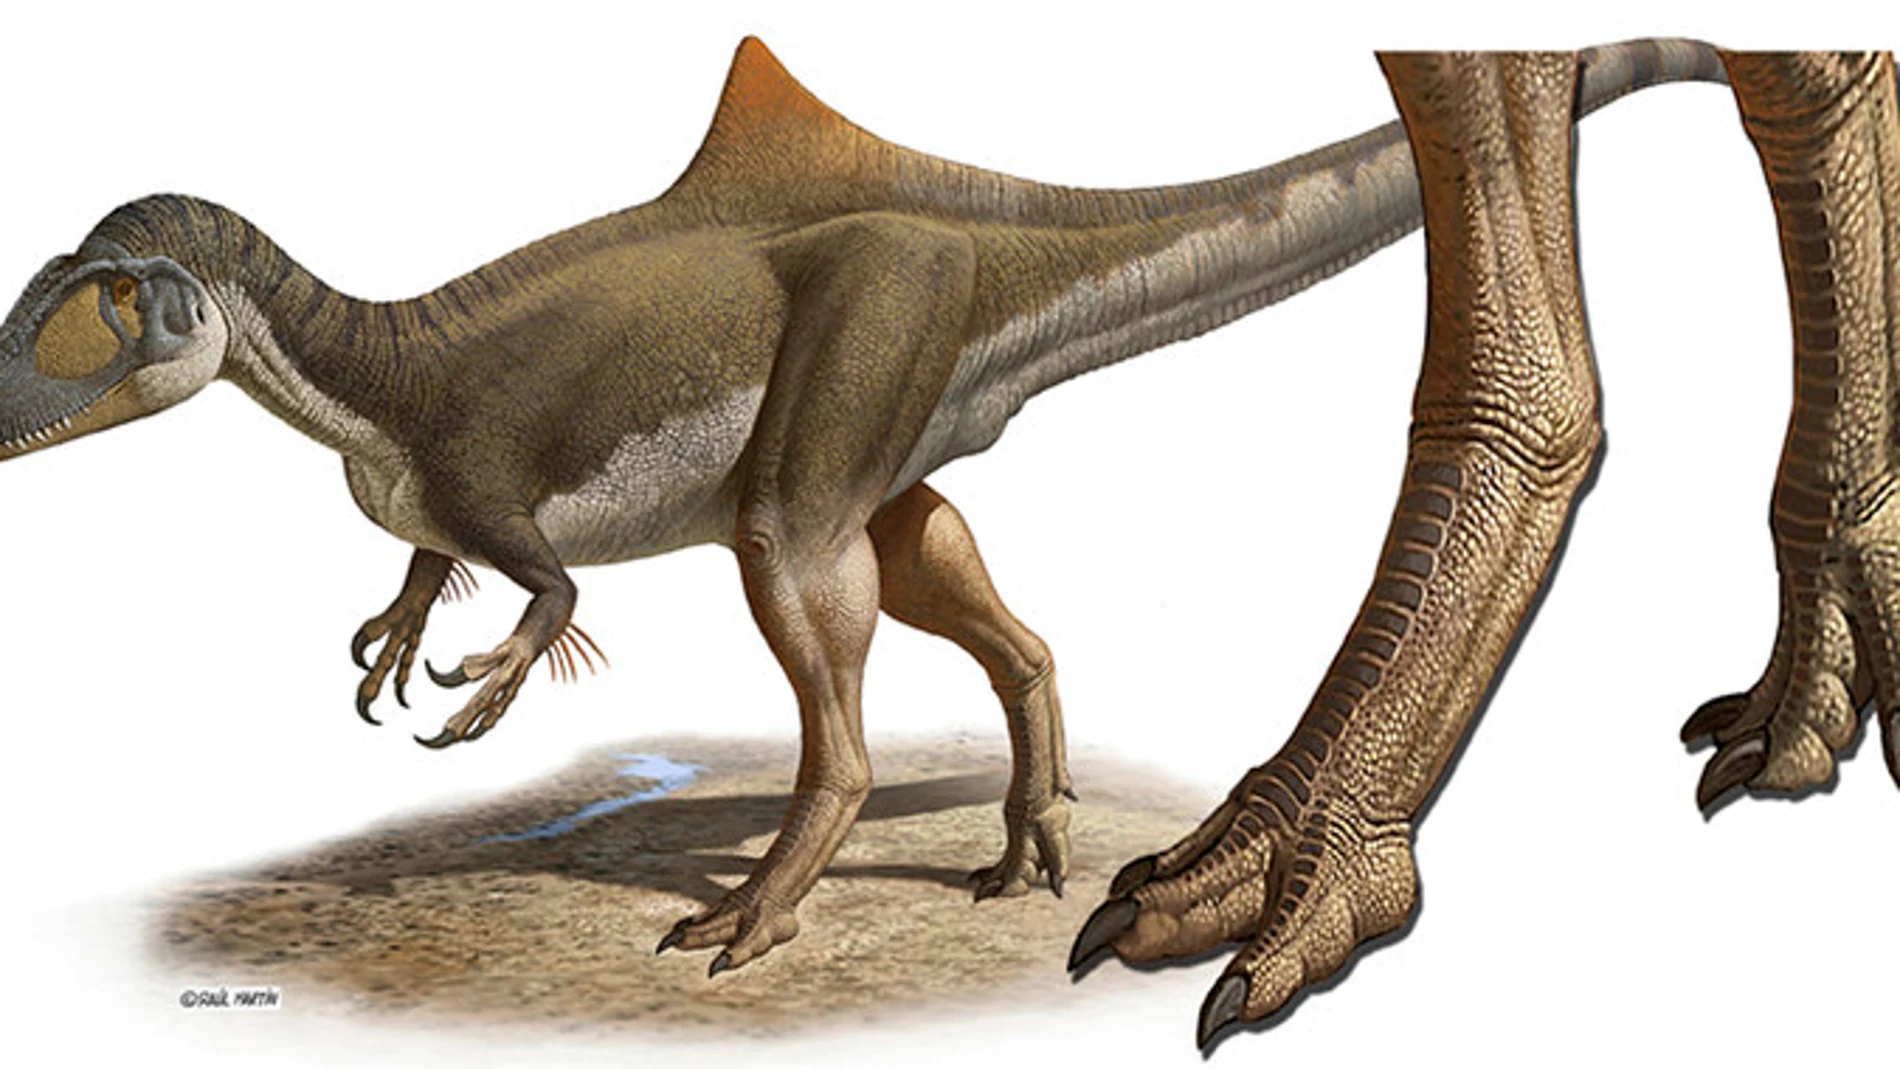 Concavenator corcovatus (Cazador jorobado de Cuenca). Reconstrucción a partir del único ejemplar fósil conocido, hallado en 2003 en el yacimiento de Las Hoyas